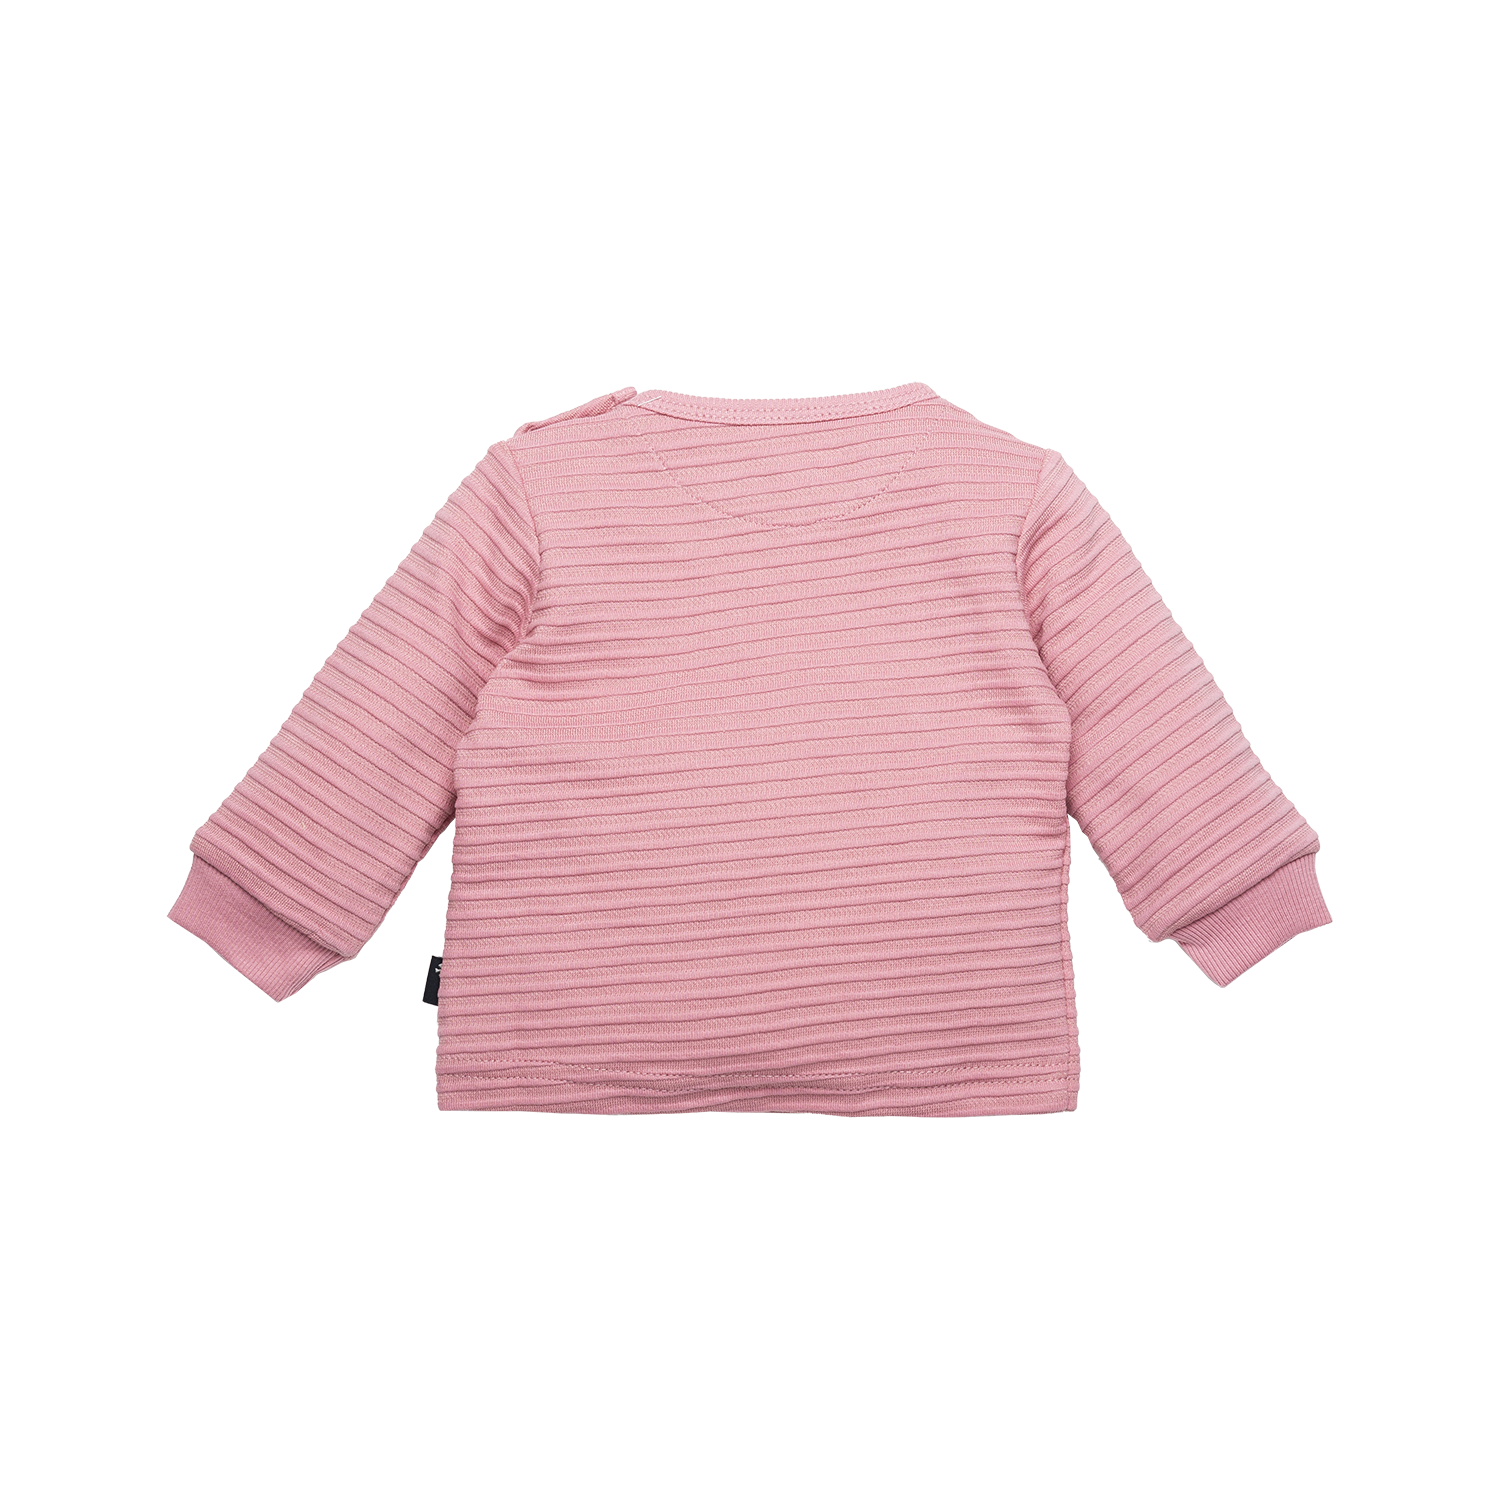 Meisjes Shirt l.sl. Rib Awesome van B.E.S.S. in de kleur Pink in maat 68.